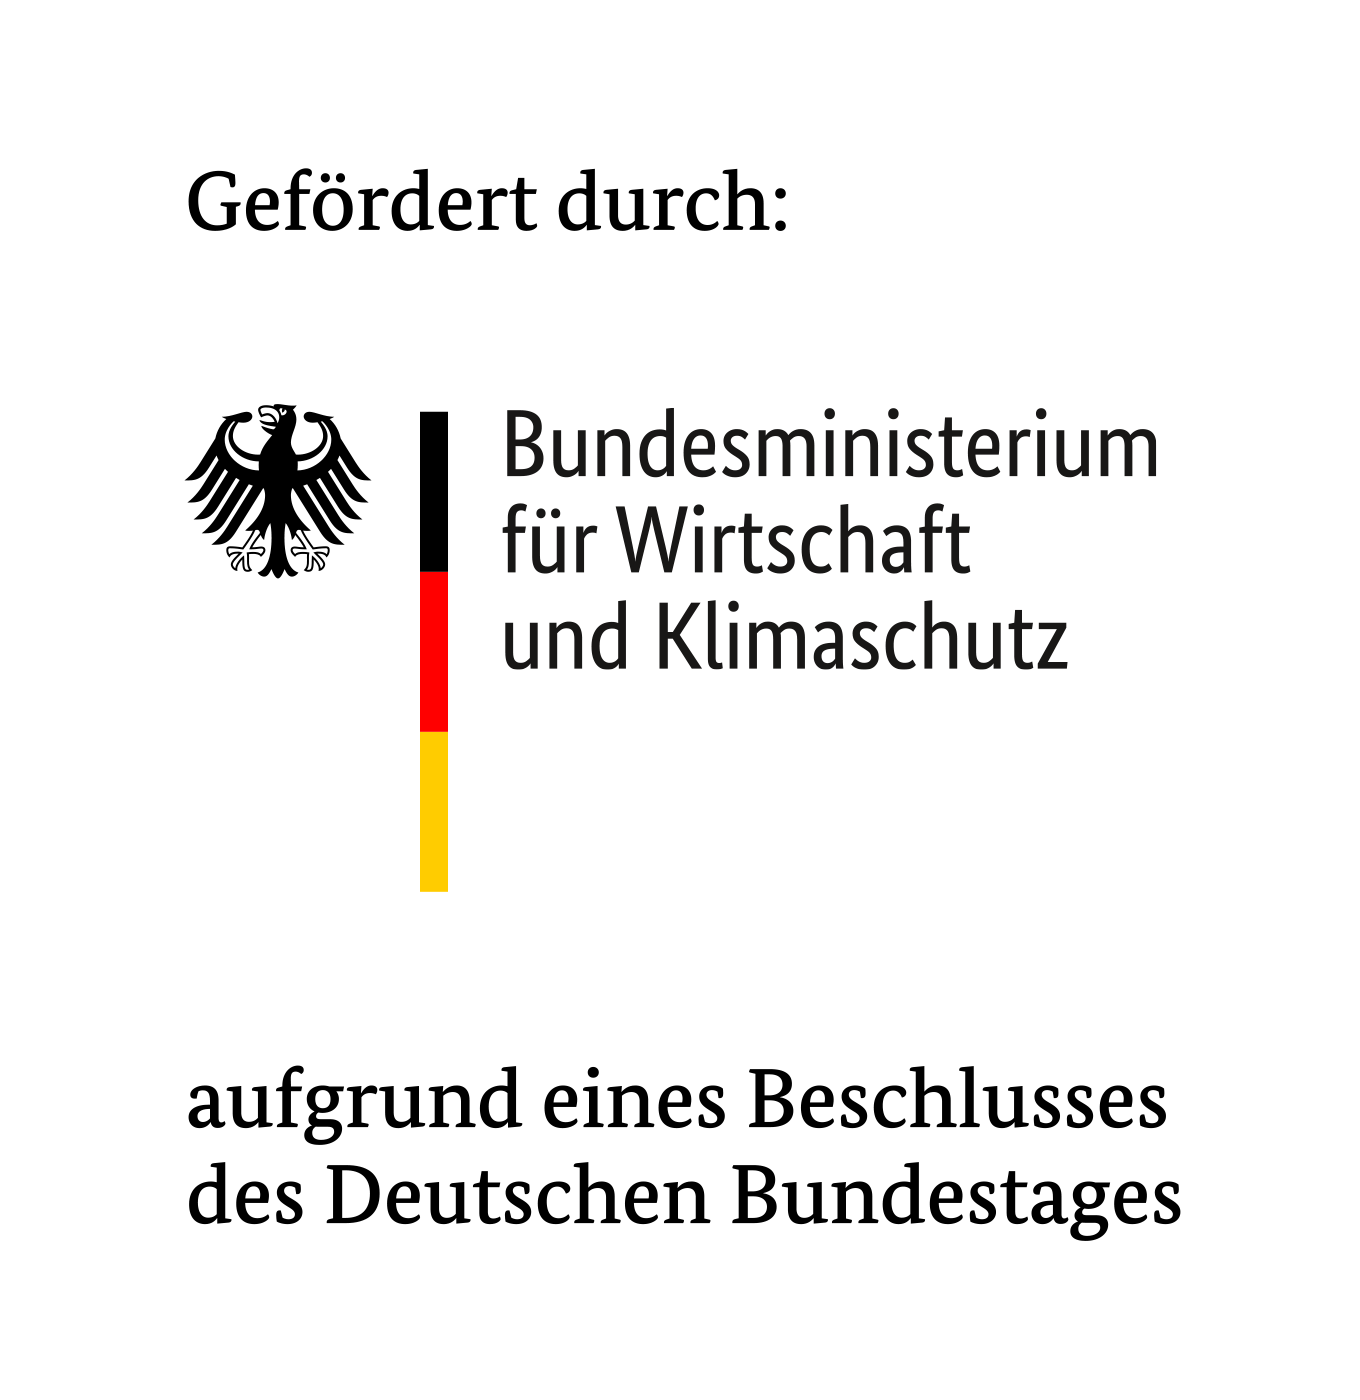 Logo Wirtschaftsförderung